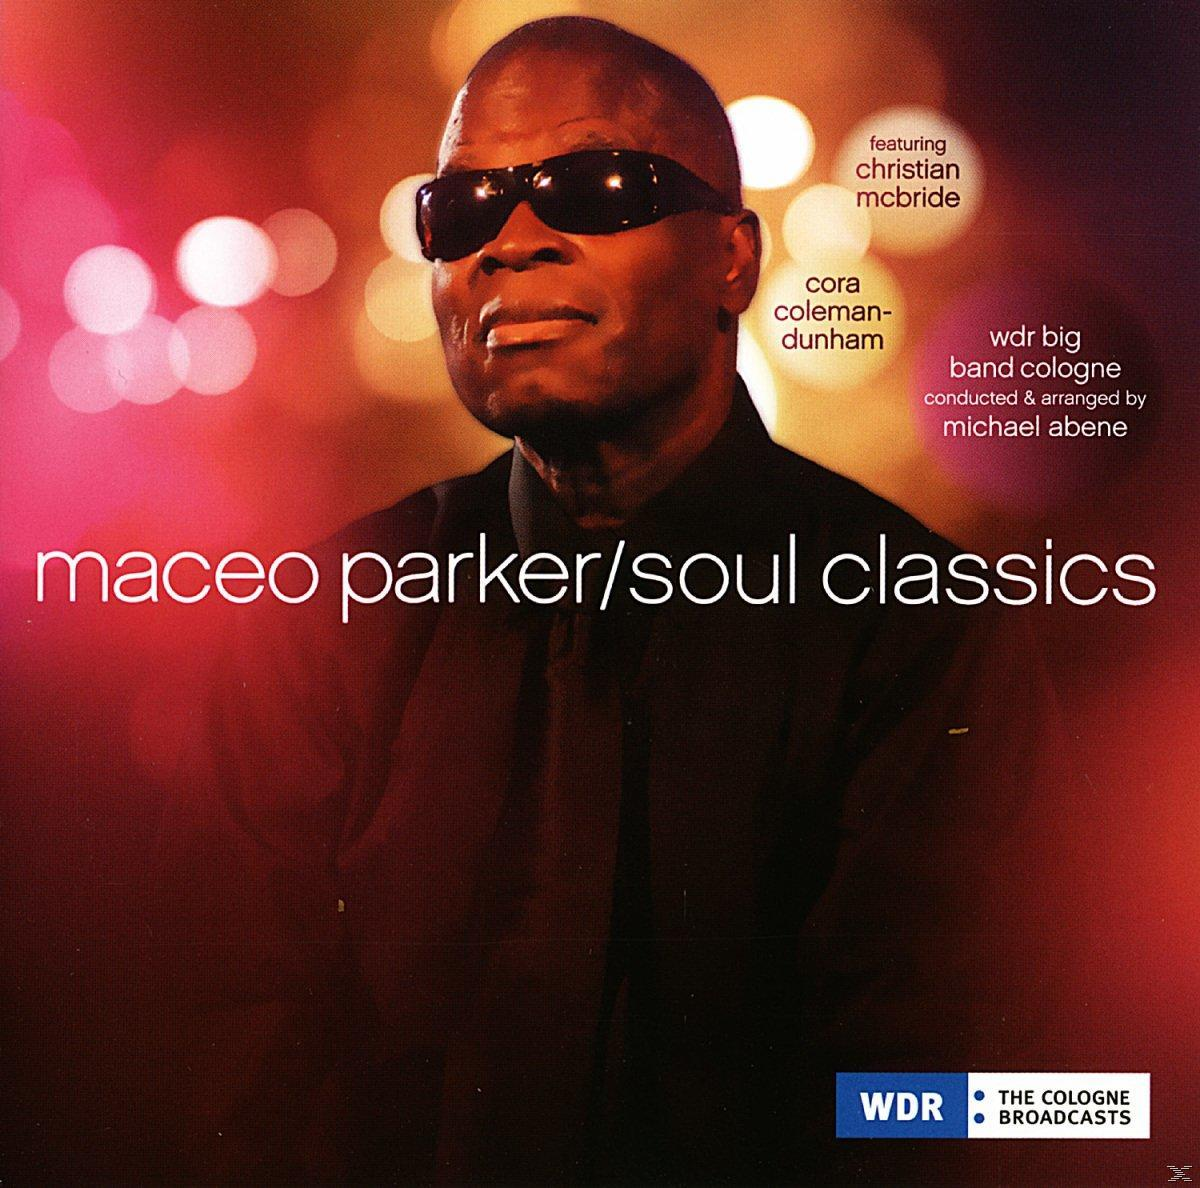 Parker (Vinyl) Soul - Maceo - Classics